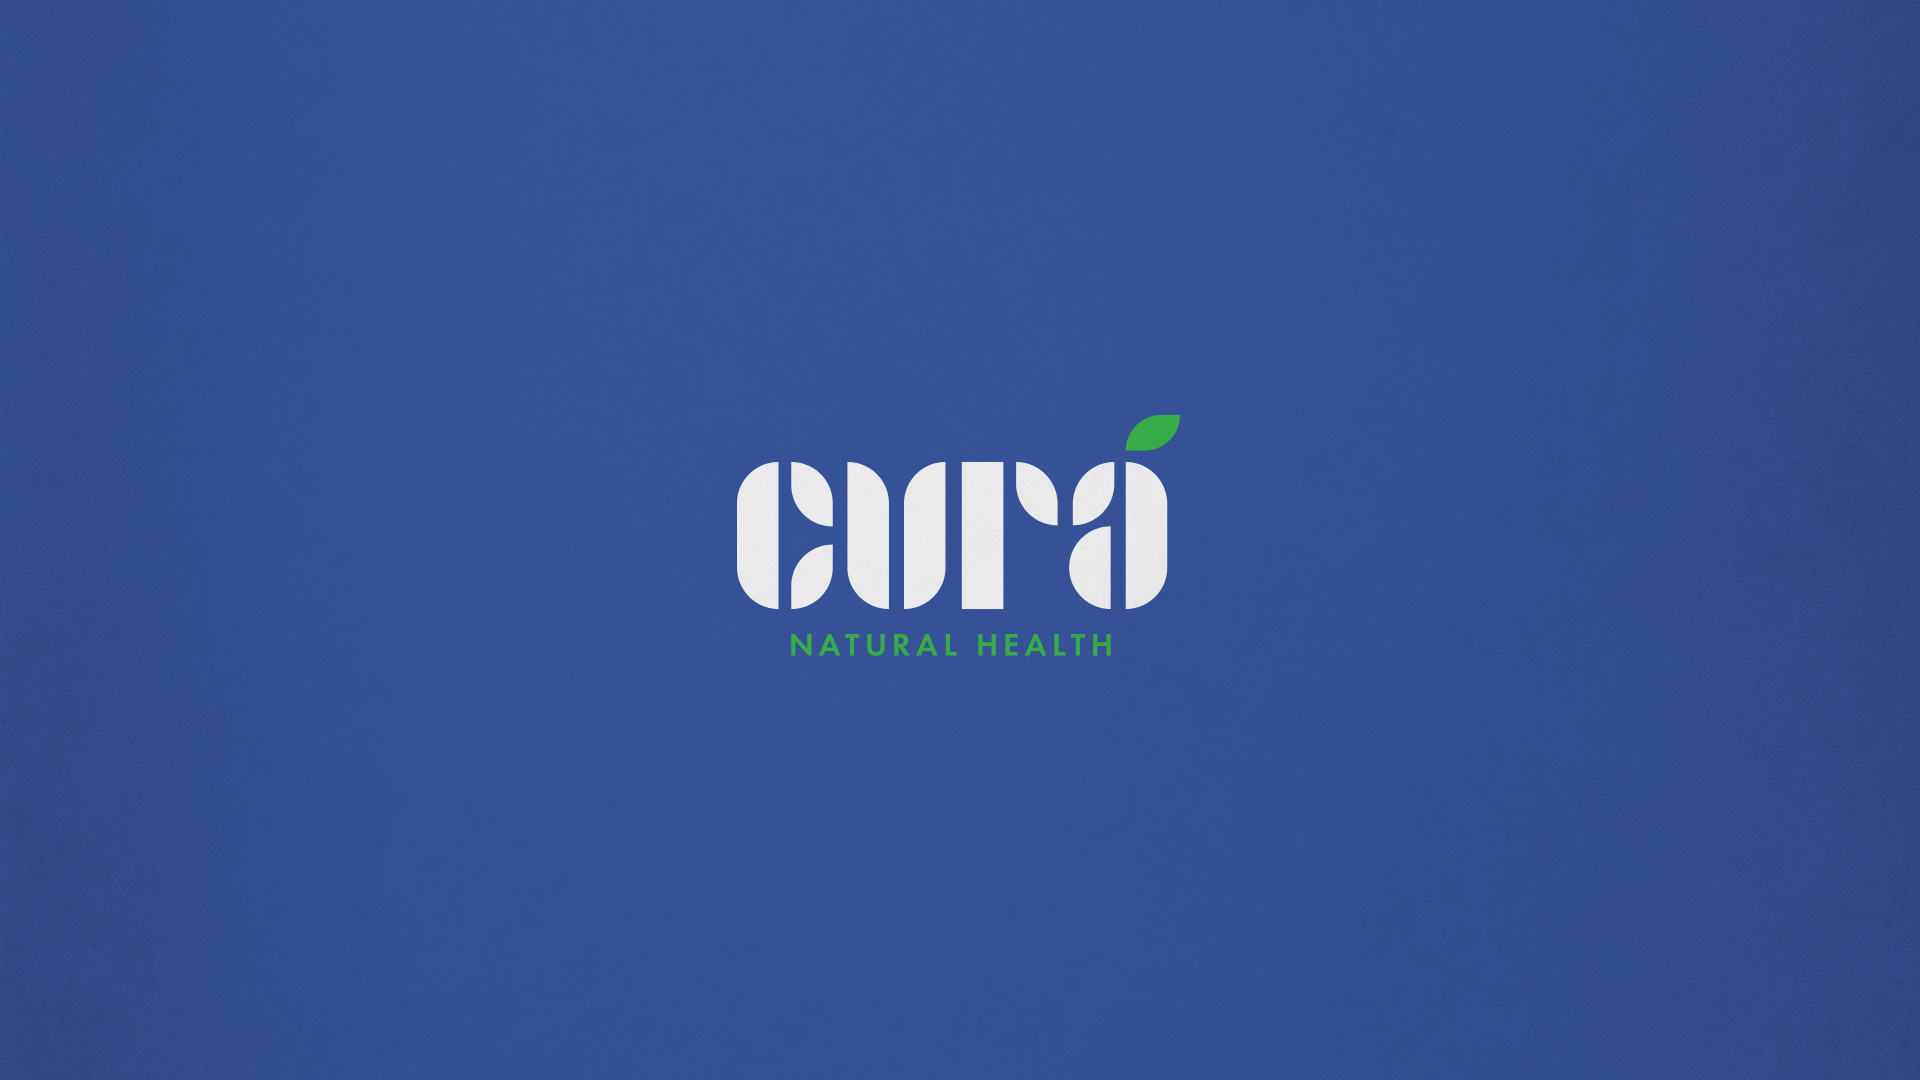 Cura-Adobe-Hidden-Treasures-Logo-Design-Contest-Winner-Blue-BG